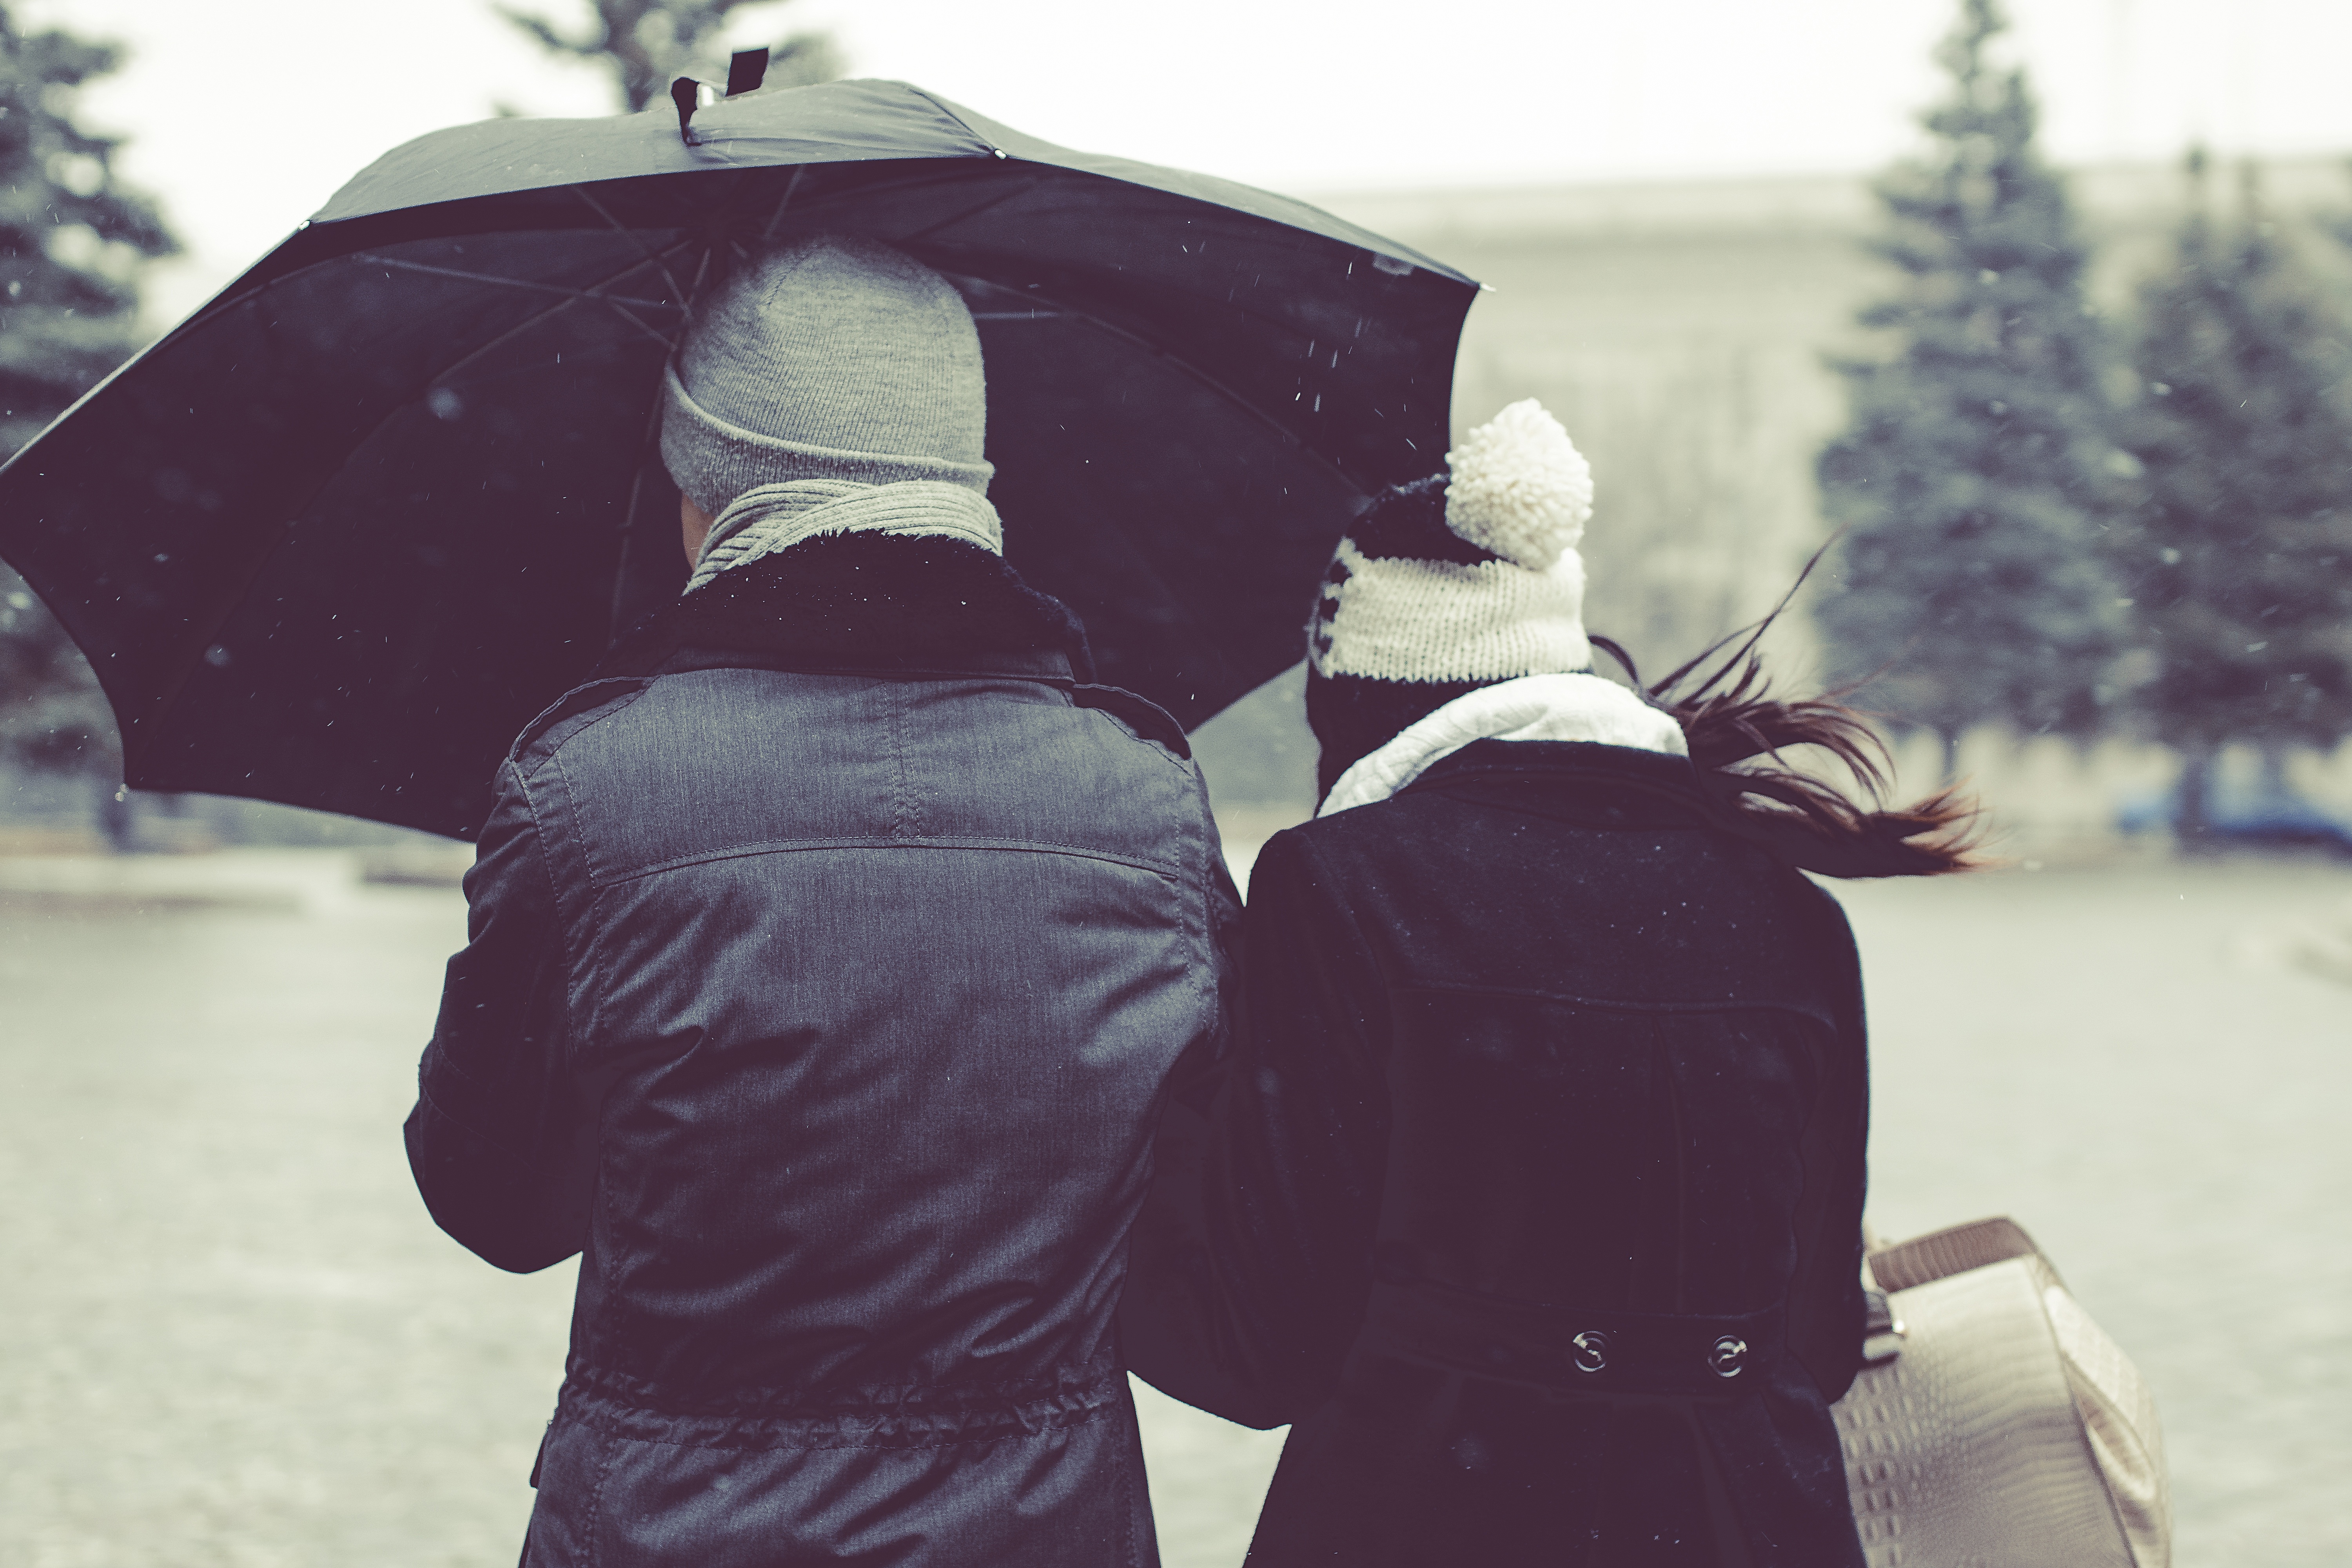 Couple standing under an umbrella